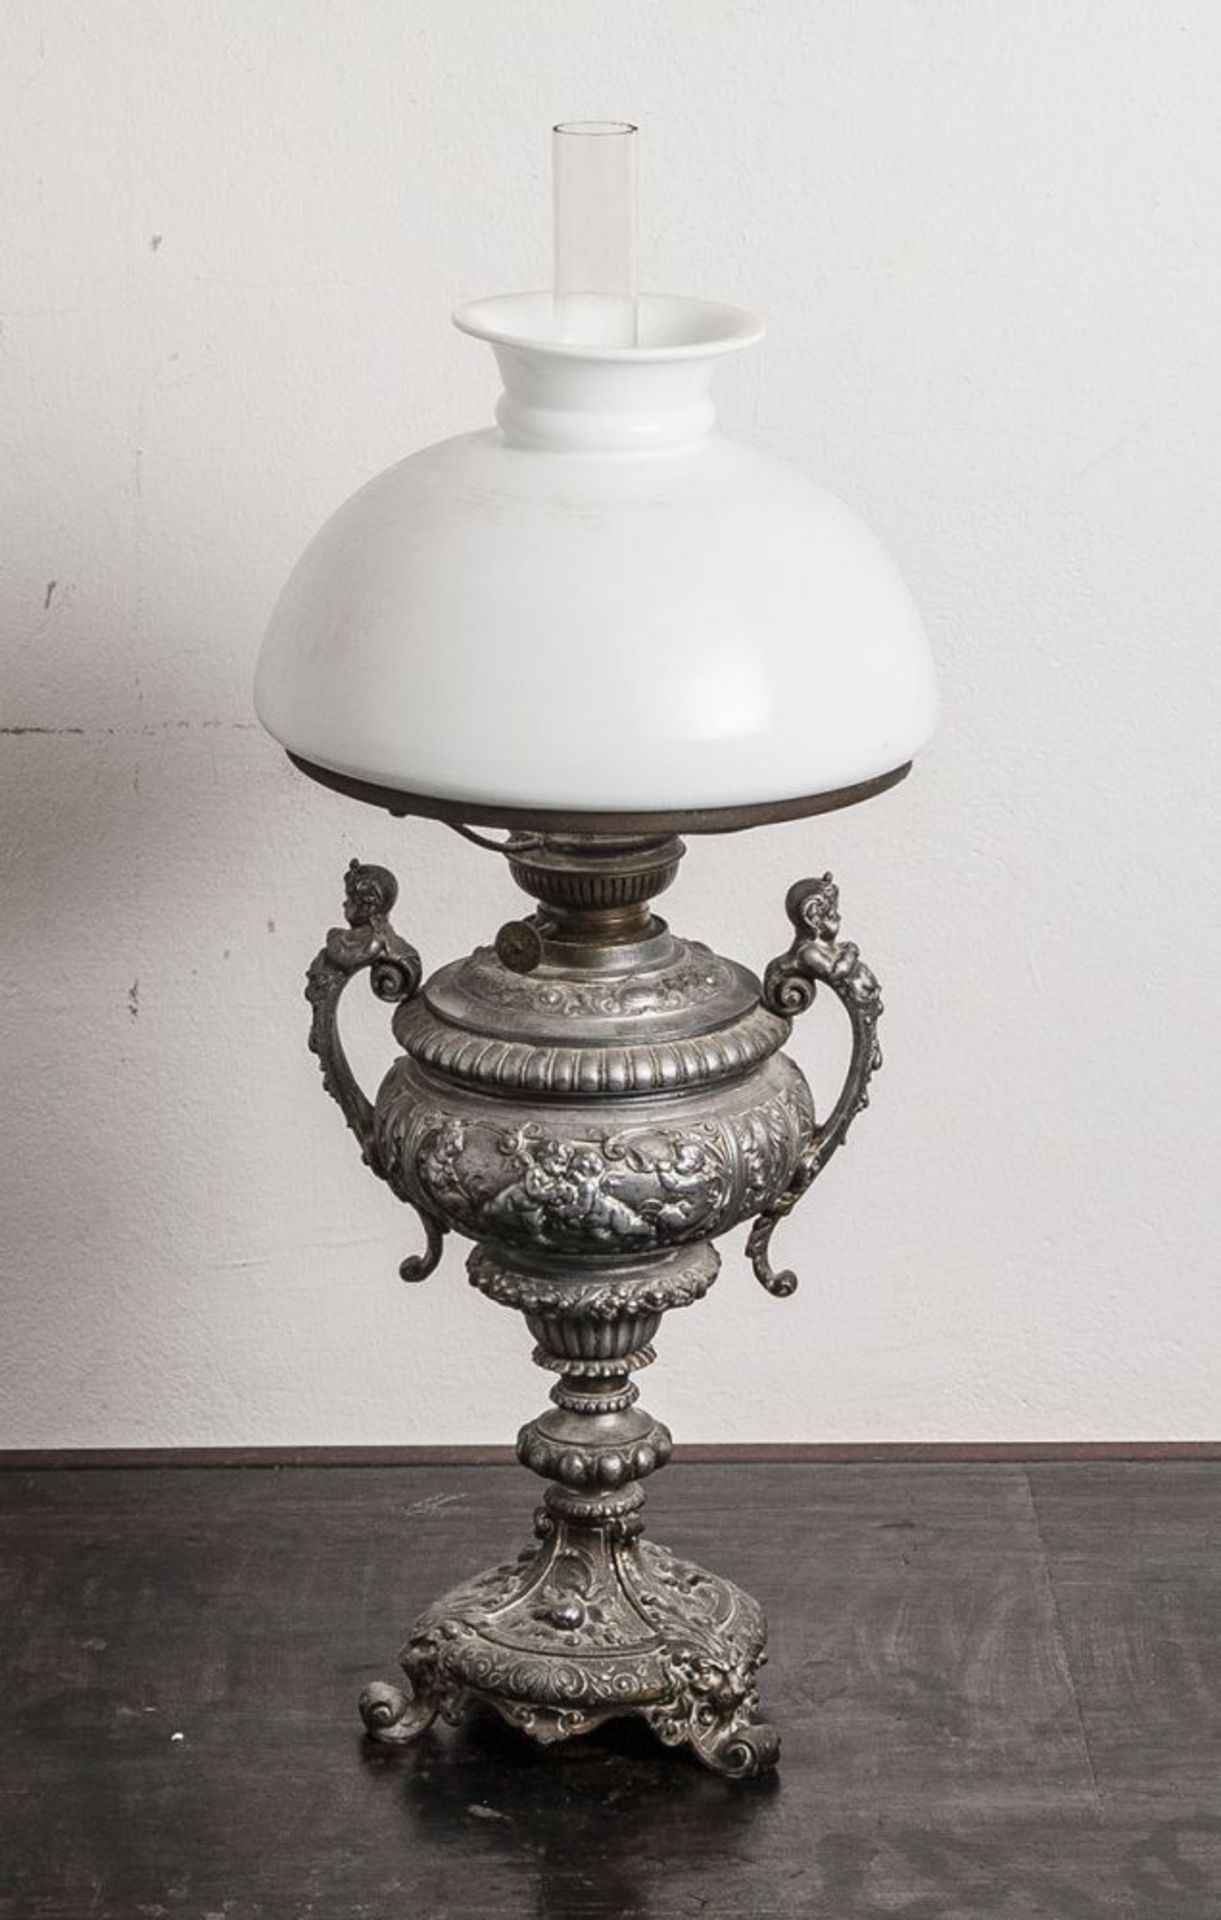 Petroleumlampe, Zinnguß um 1880/90, üppige Verzierung, weißer Glasschirm, Originalzustand.